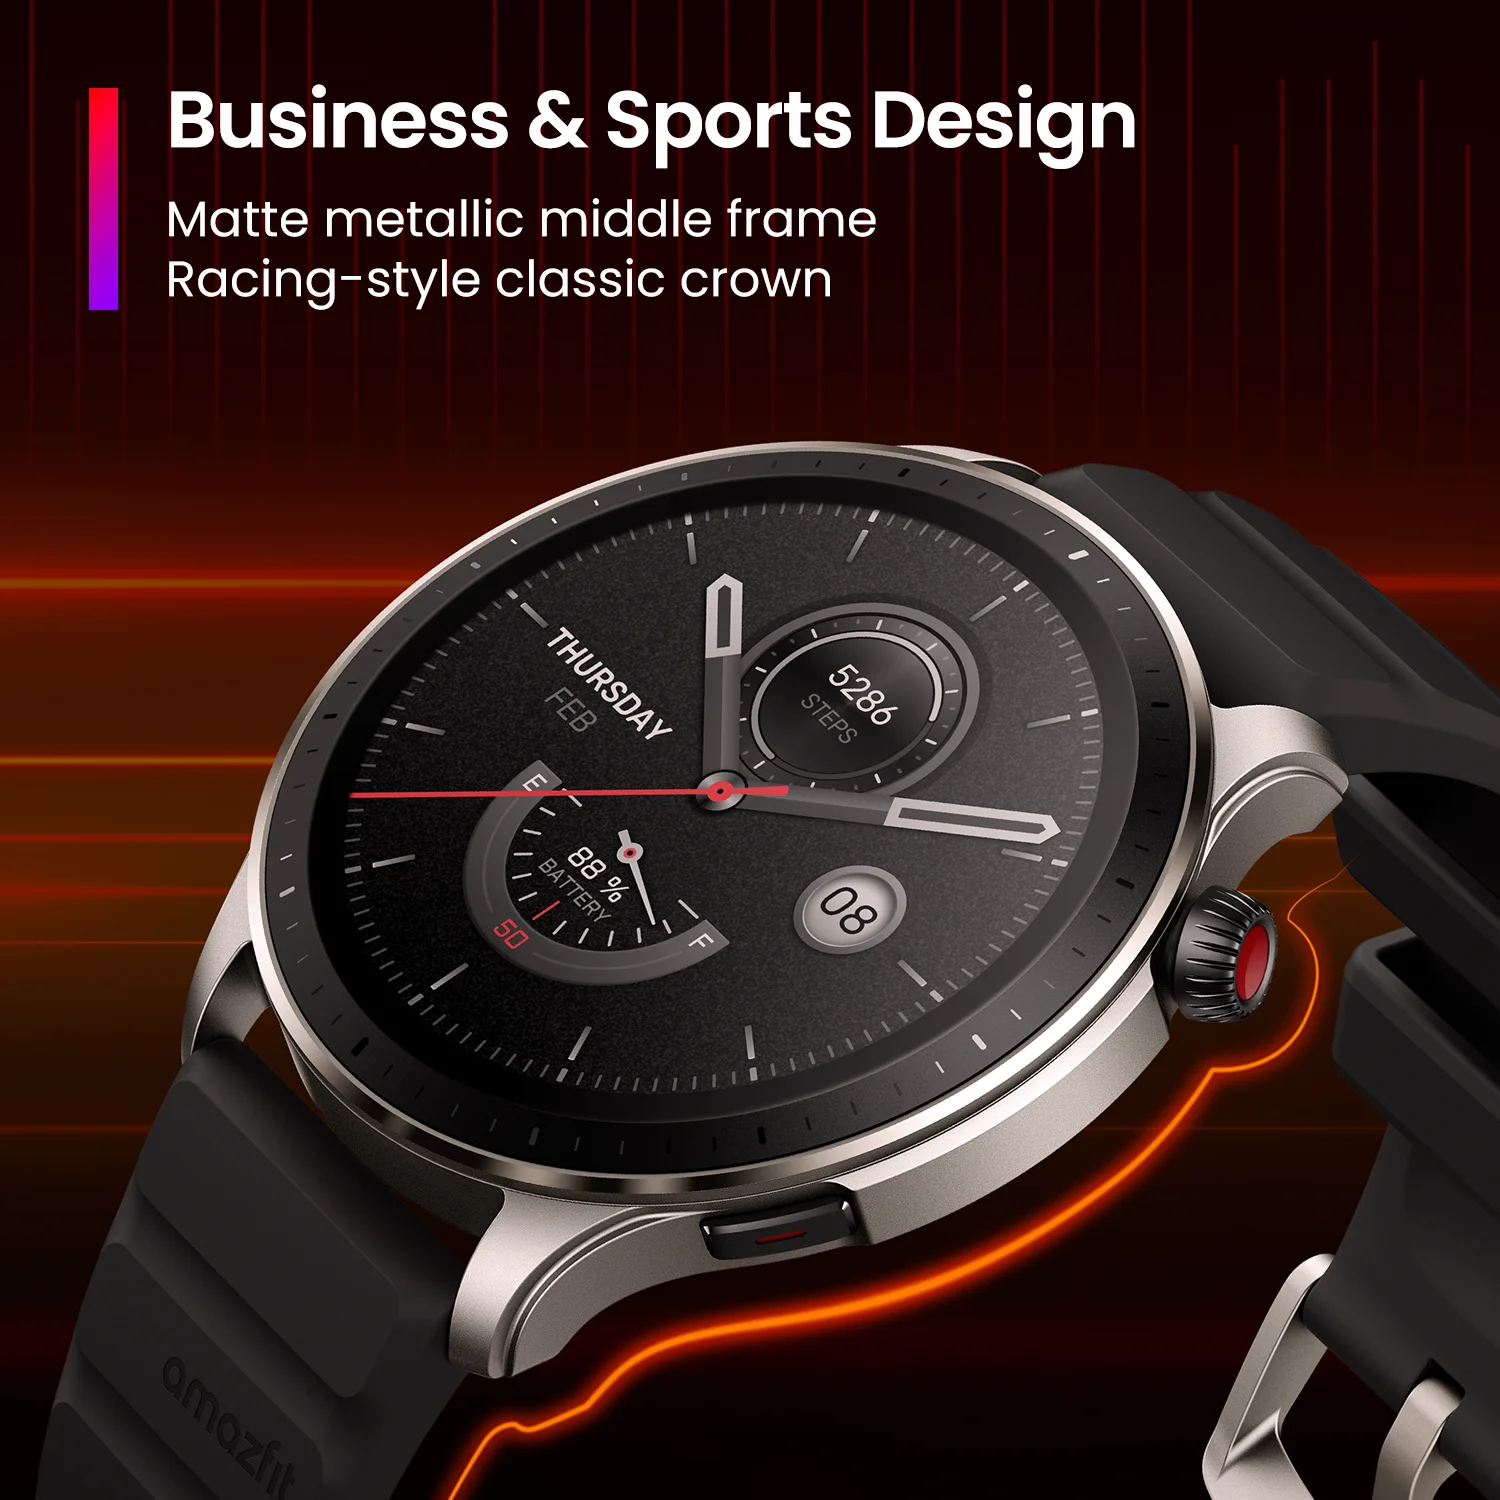 НОВЫЕ умные часы Amazfit GTR 4 встроенные Alexa 150 спортивных режимов Bluetooth телефонные